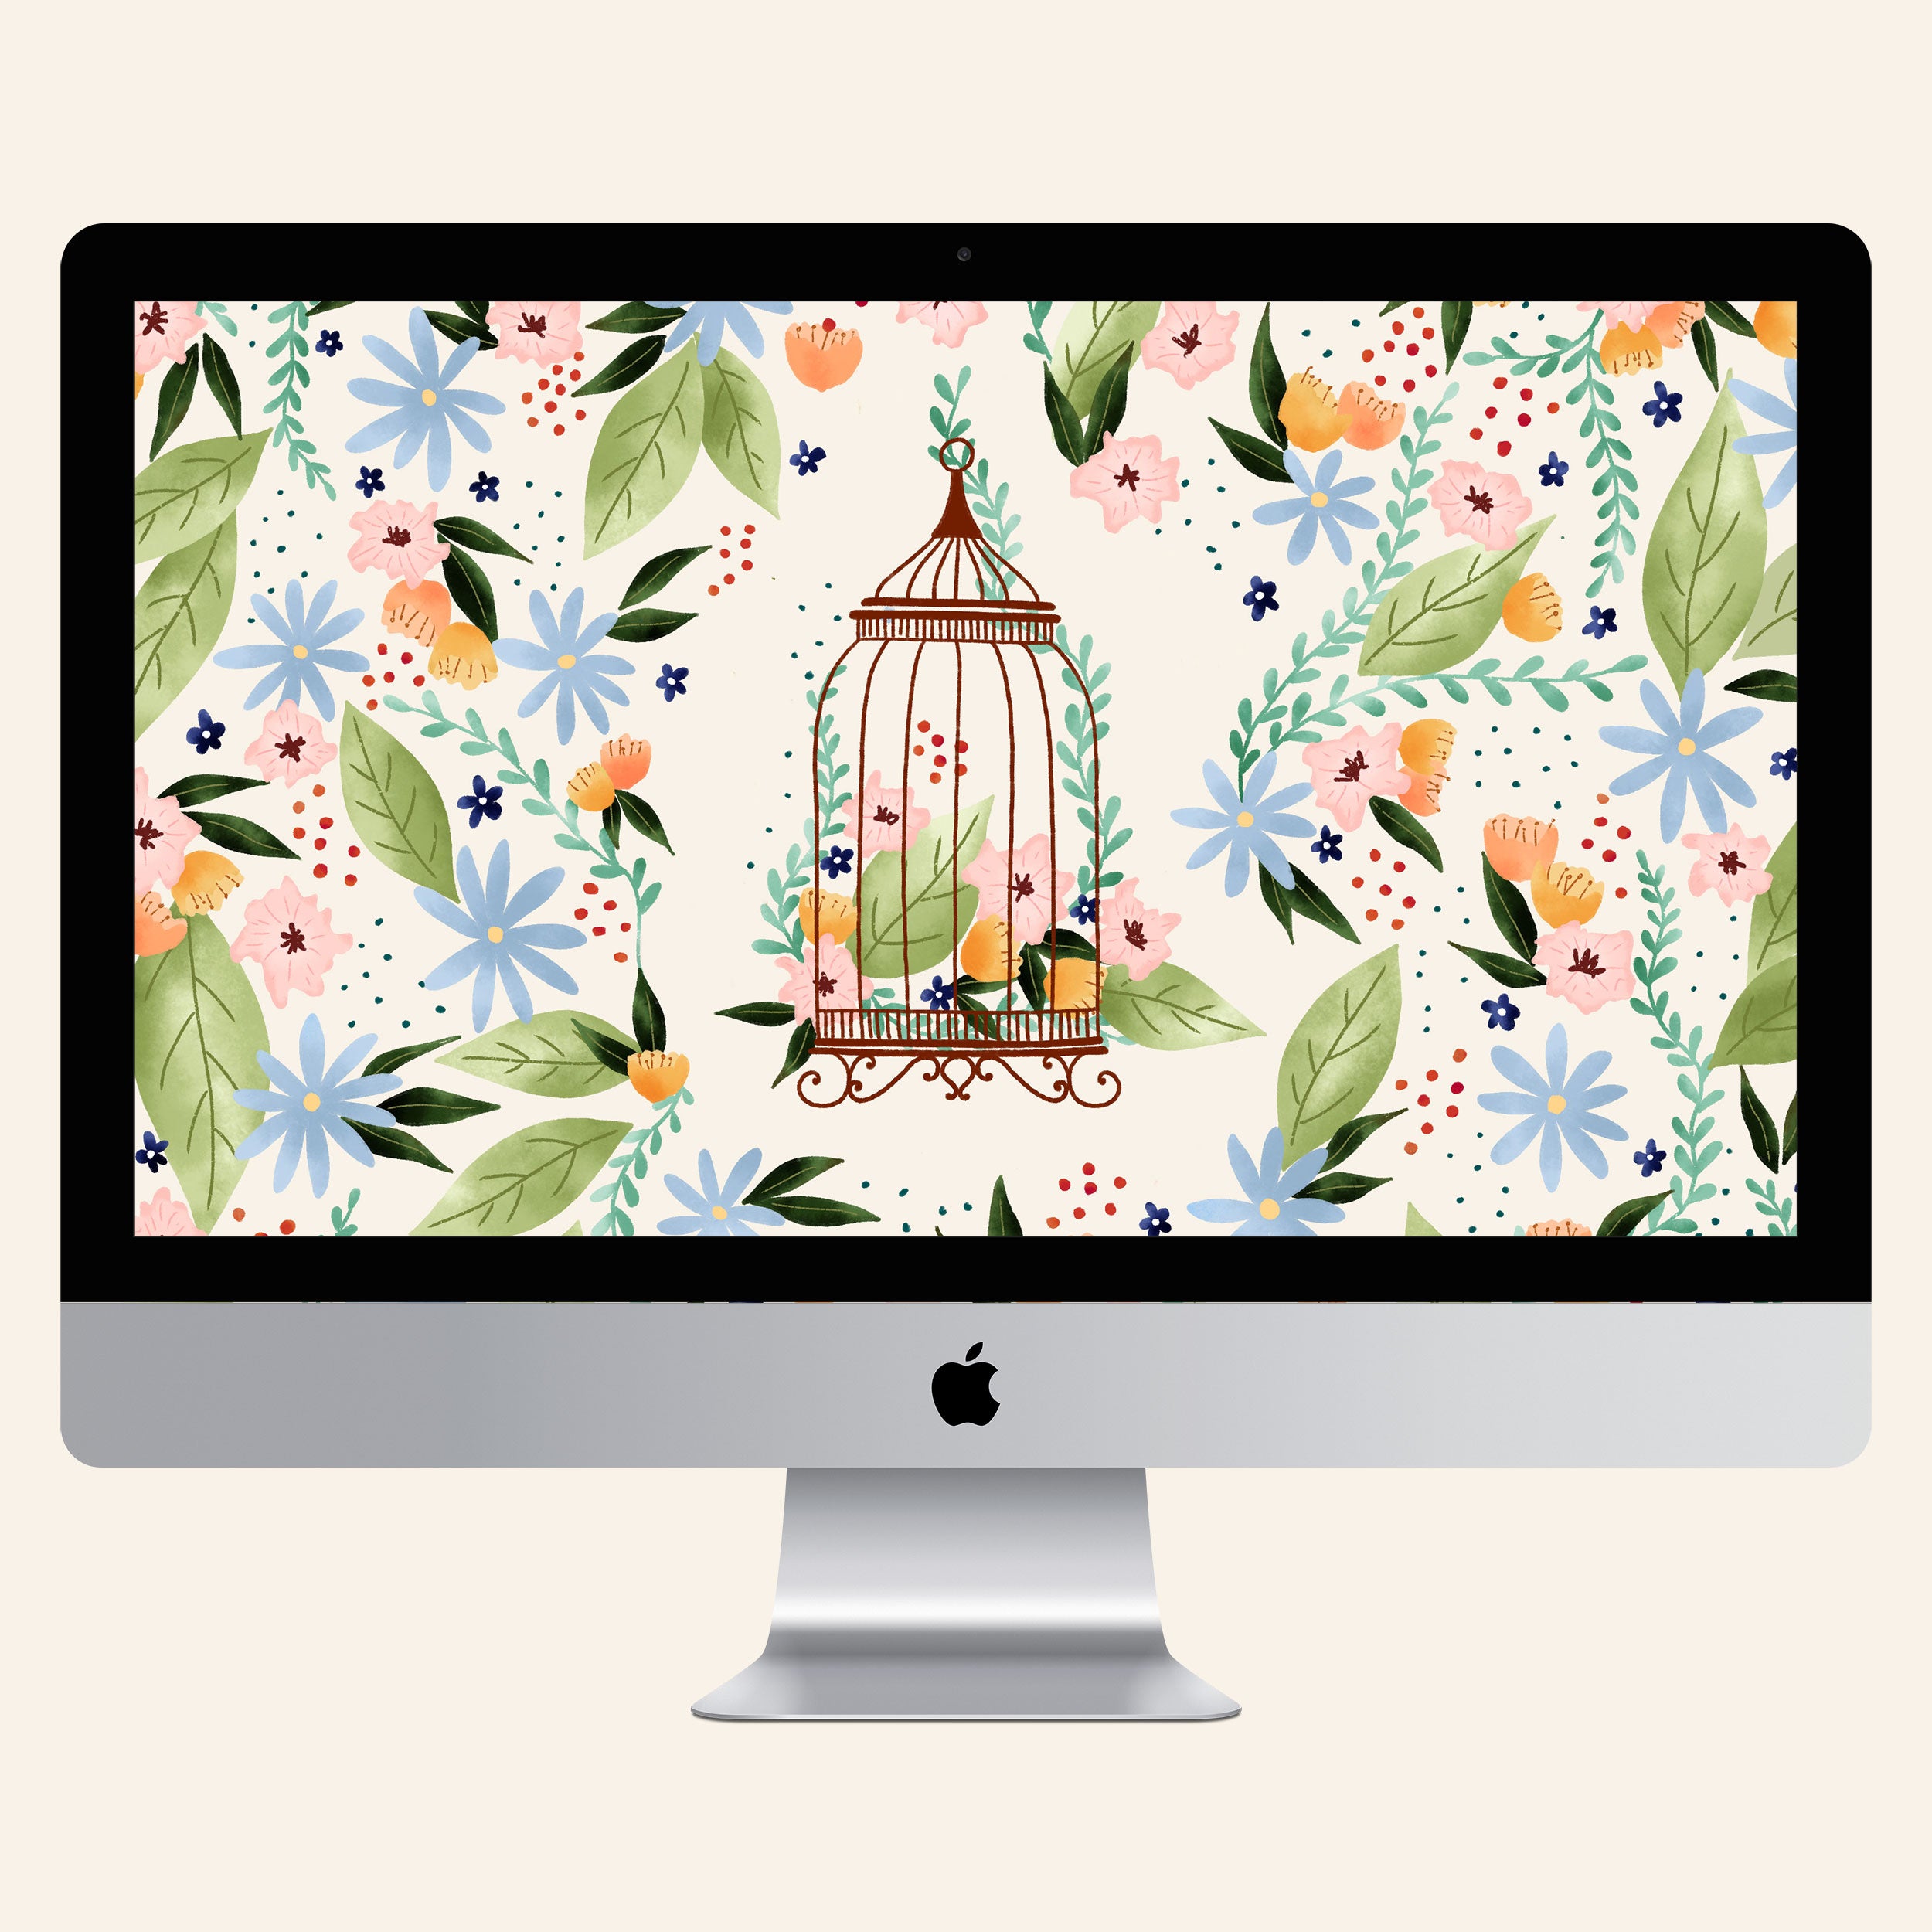 Floral birdcage wallpaper - free download for desktop, tablet and phone